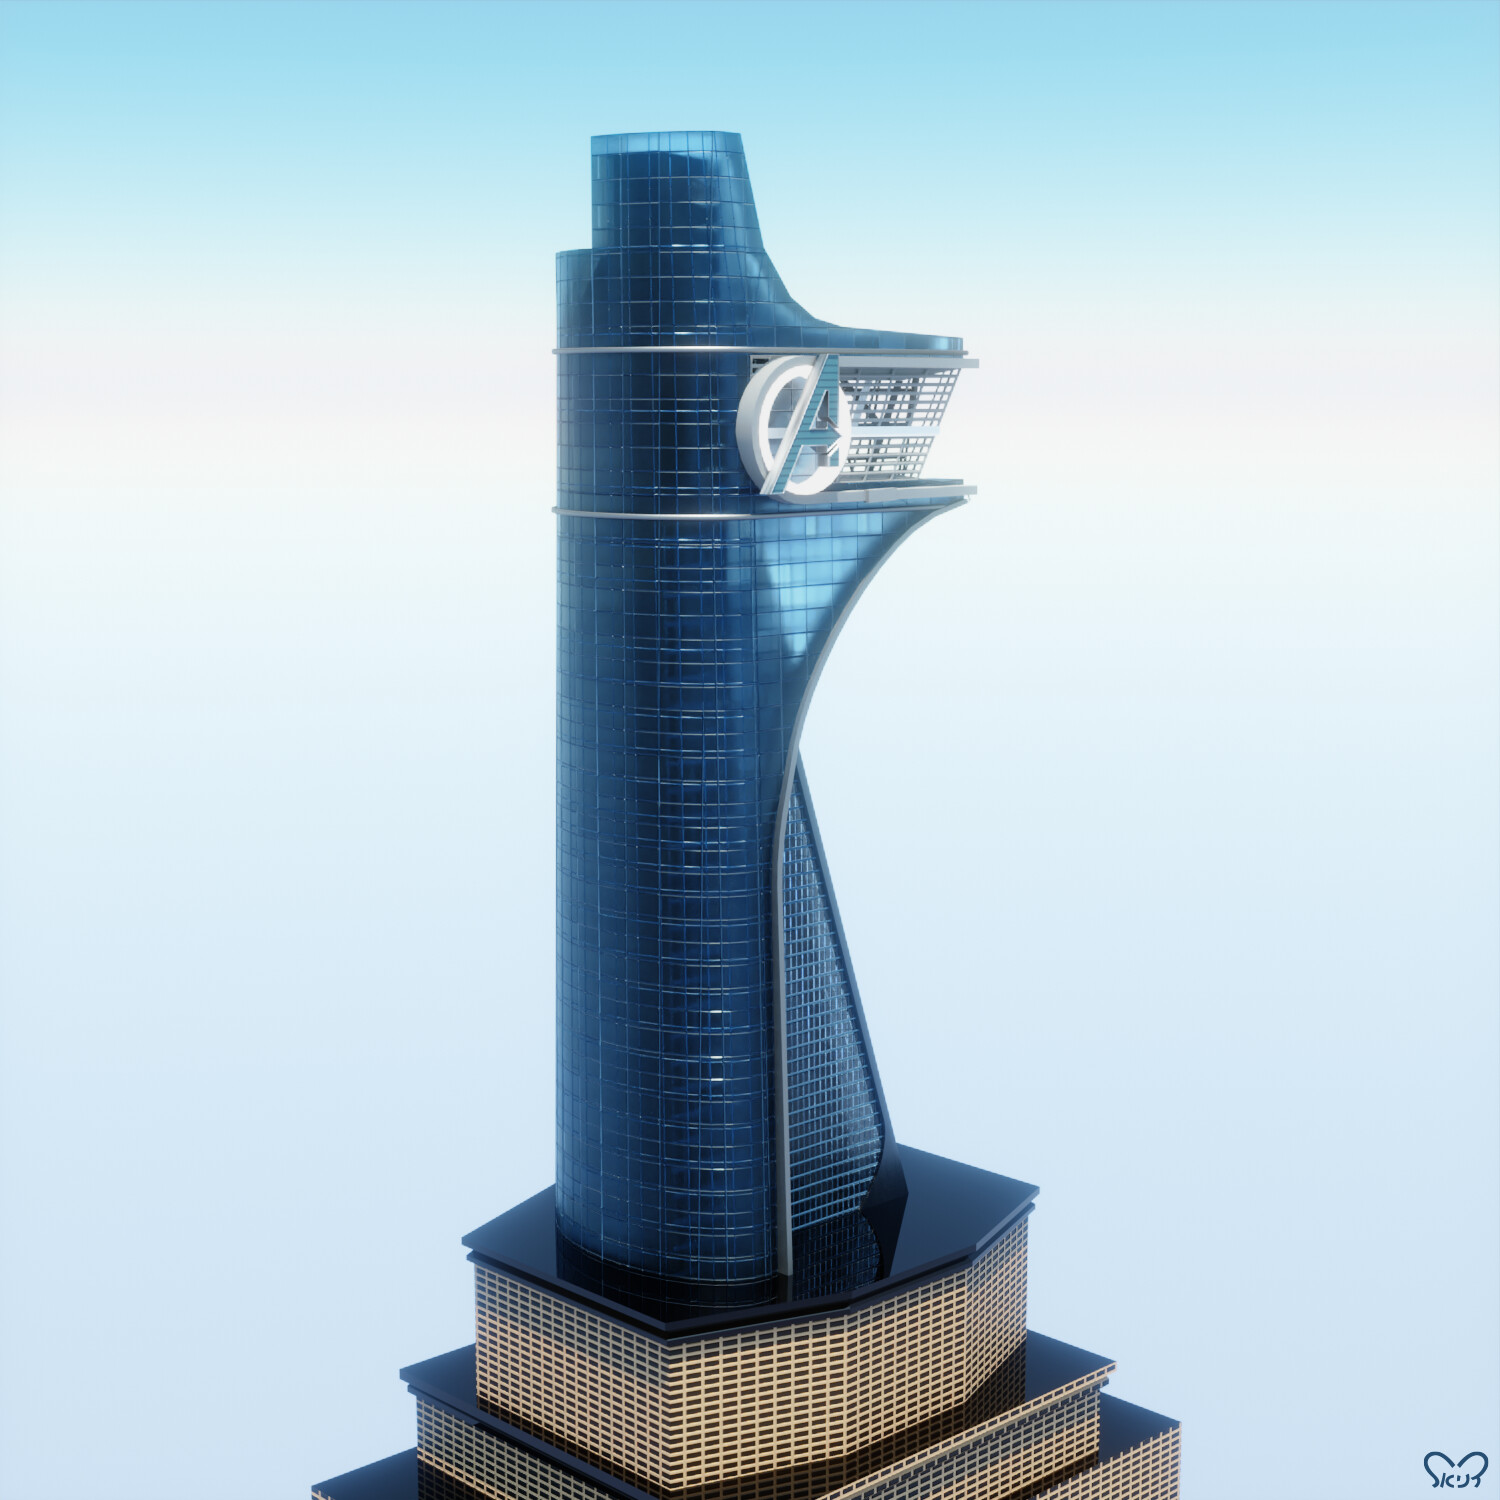 ArtStation - Avengers Tower - Exterior